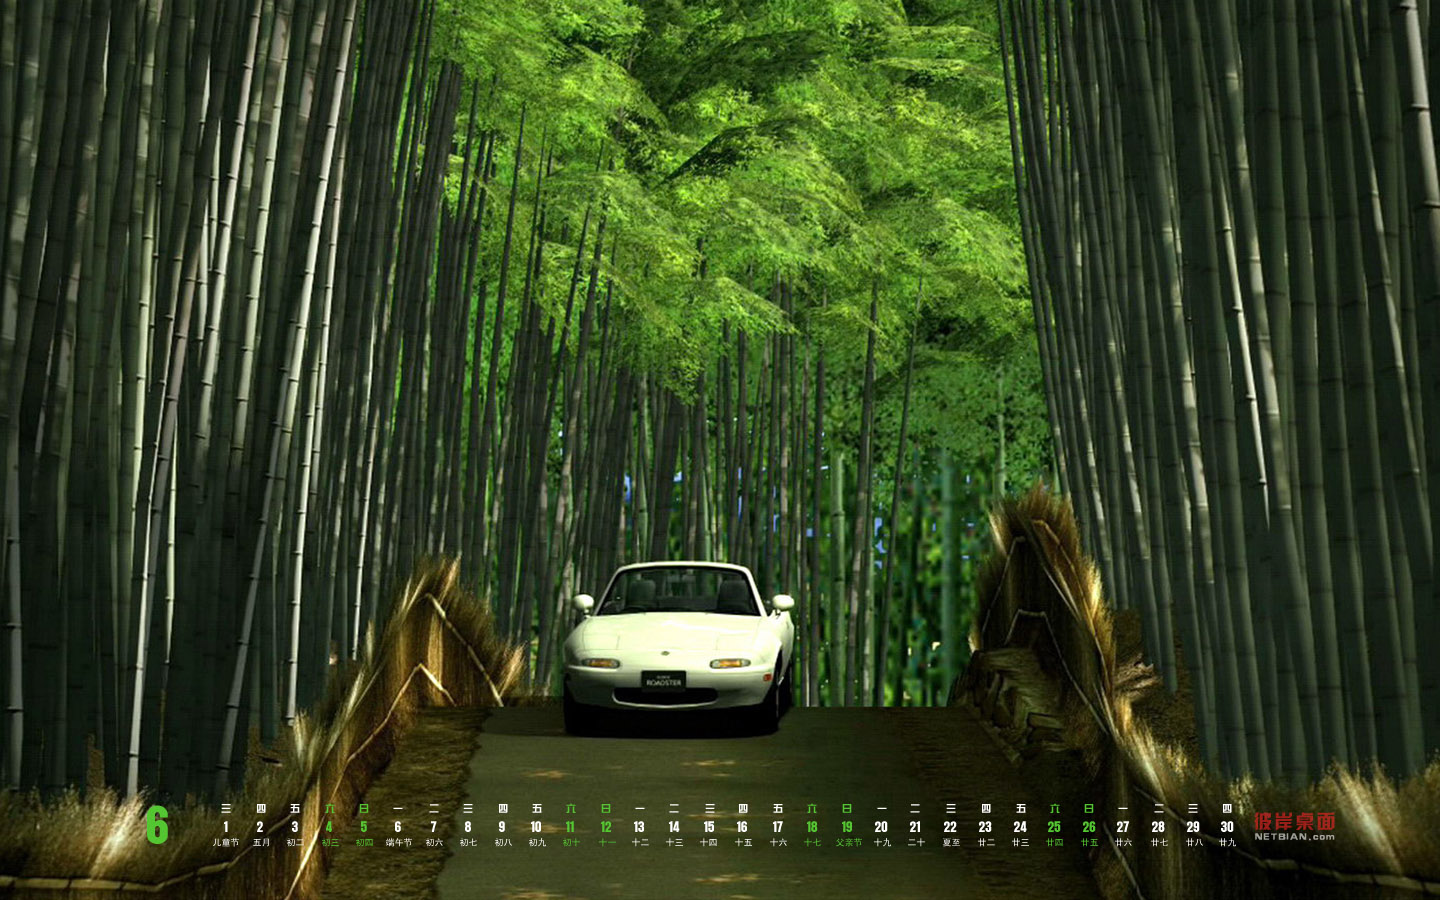 Green Bamboo Forest June 2011 Desktop Calendar Wallpaper